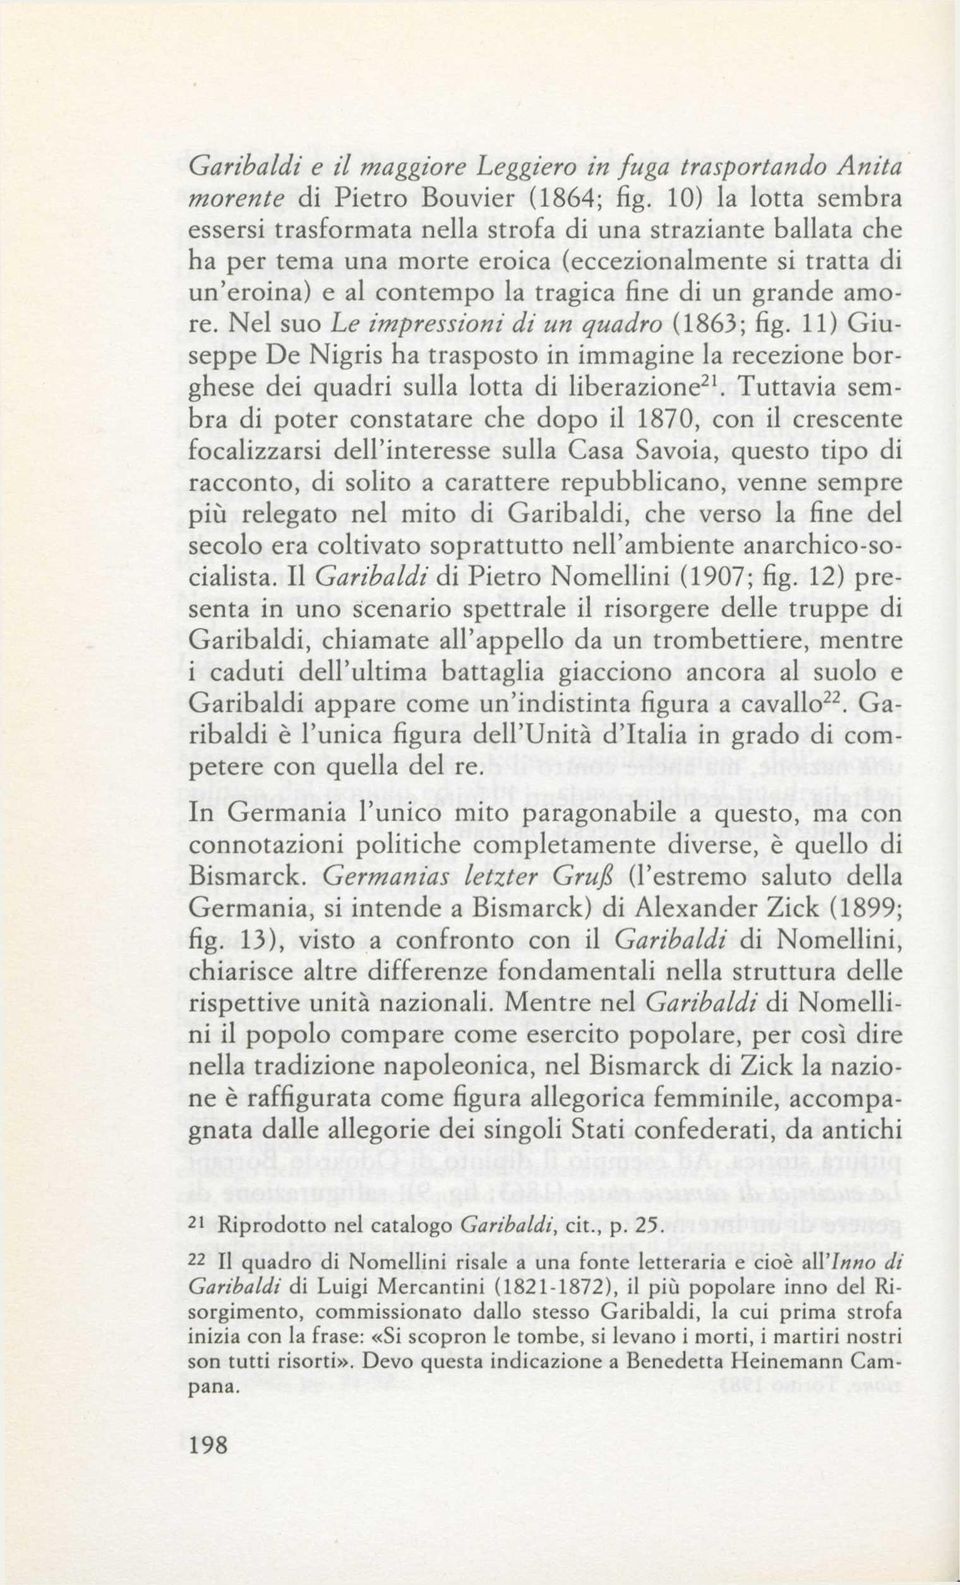 amore. Nel suo he impressioni di un quadro (1863; fig. 11) Giuseppe De Nigris ha trasposto in immagine la recezione borghese dei quadri sulla lotta di liberazione 21.